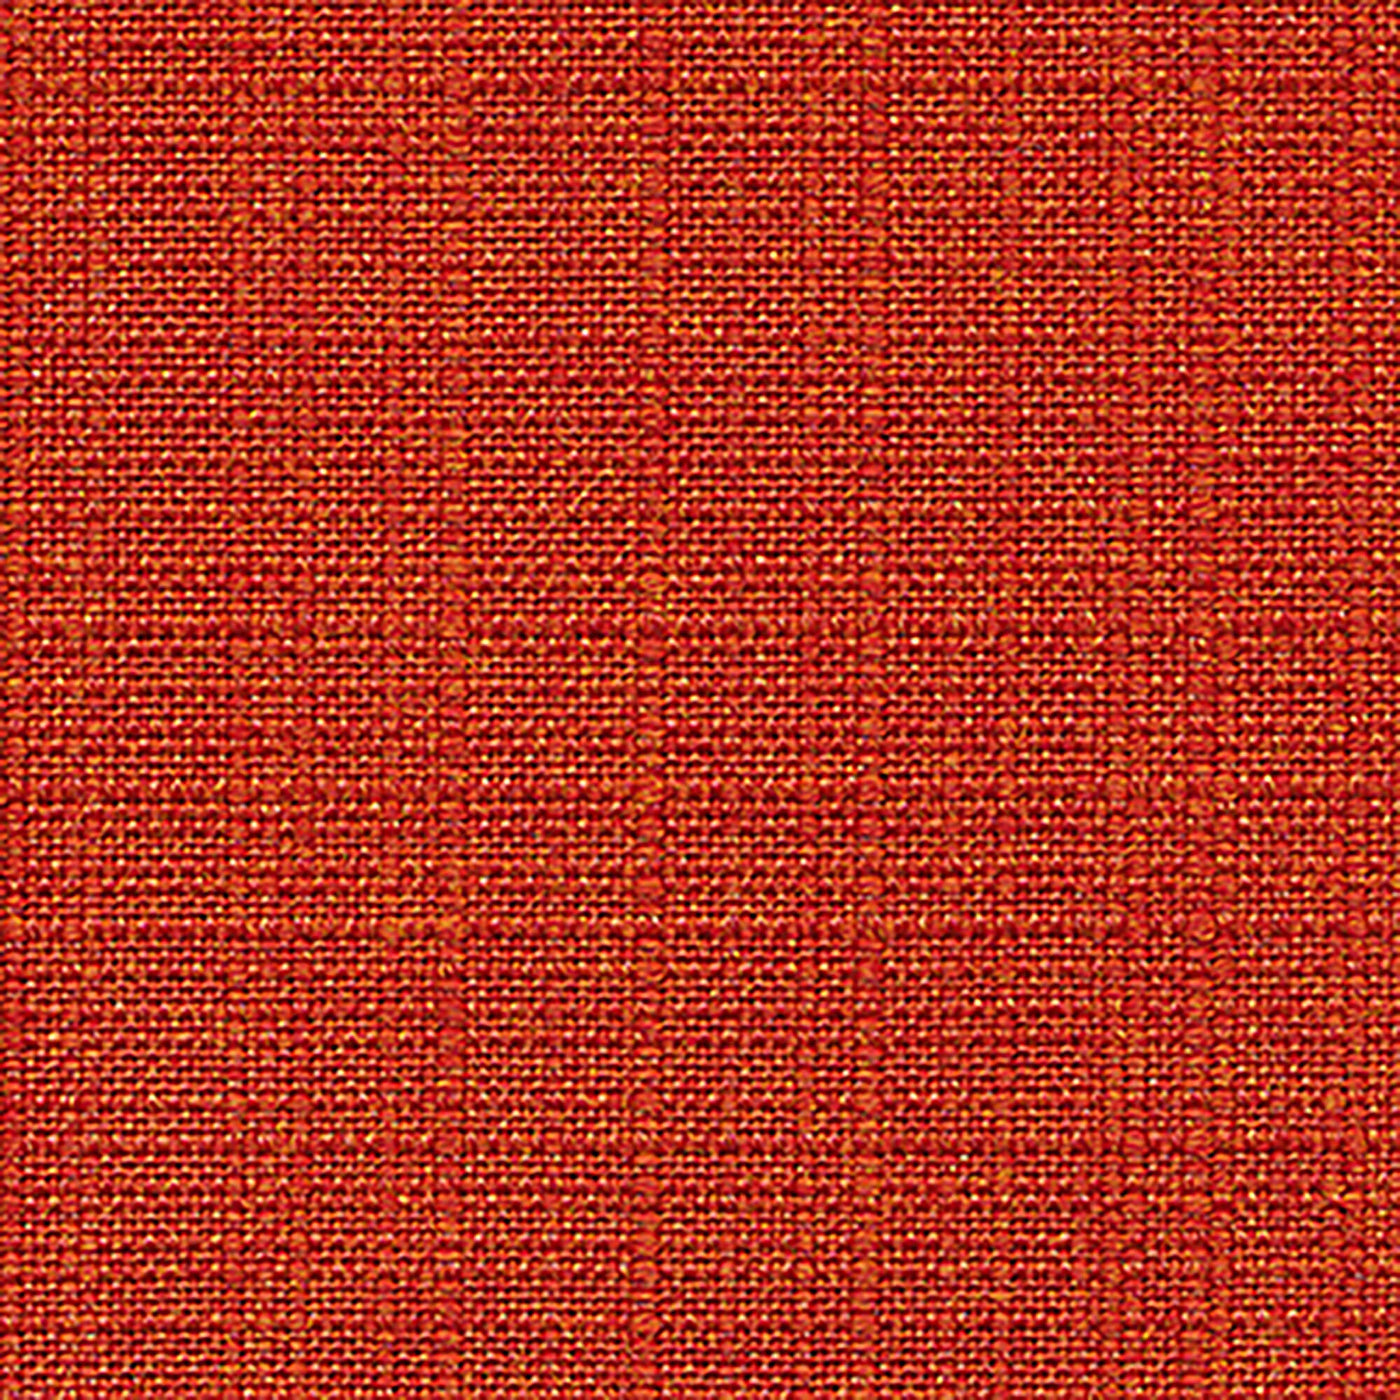 PENGI Outdoor Curtains Waterproof - Linen Burnt Orange